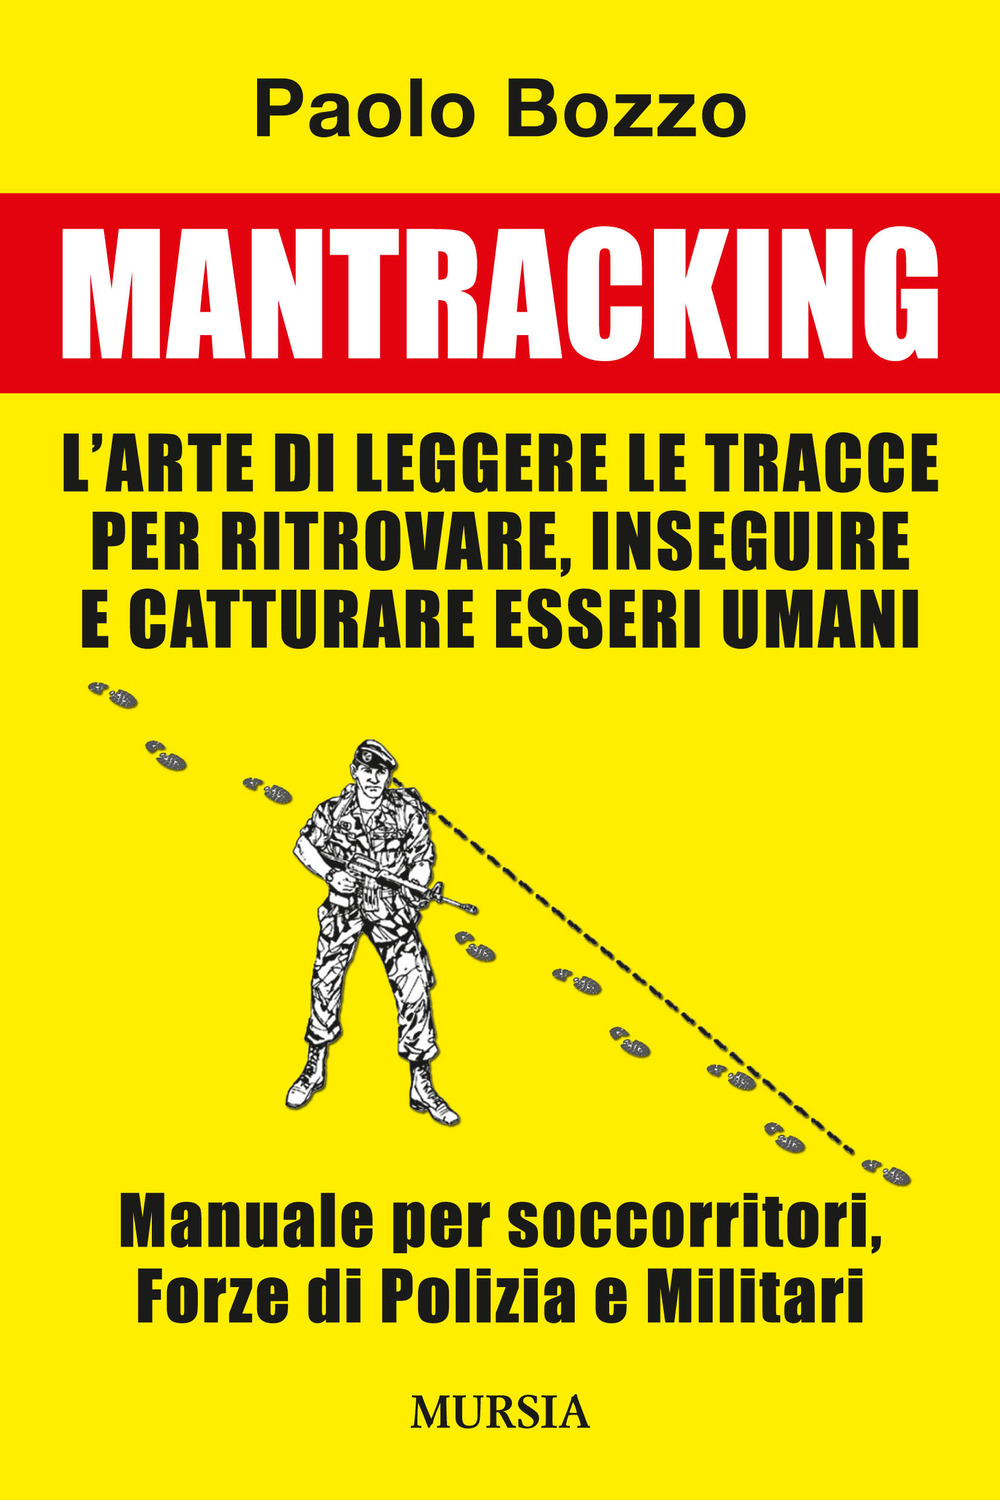 Mantracking. L'arte di leggere le tracce per ritrovare, inseguire e catturare esseri umani